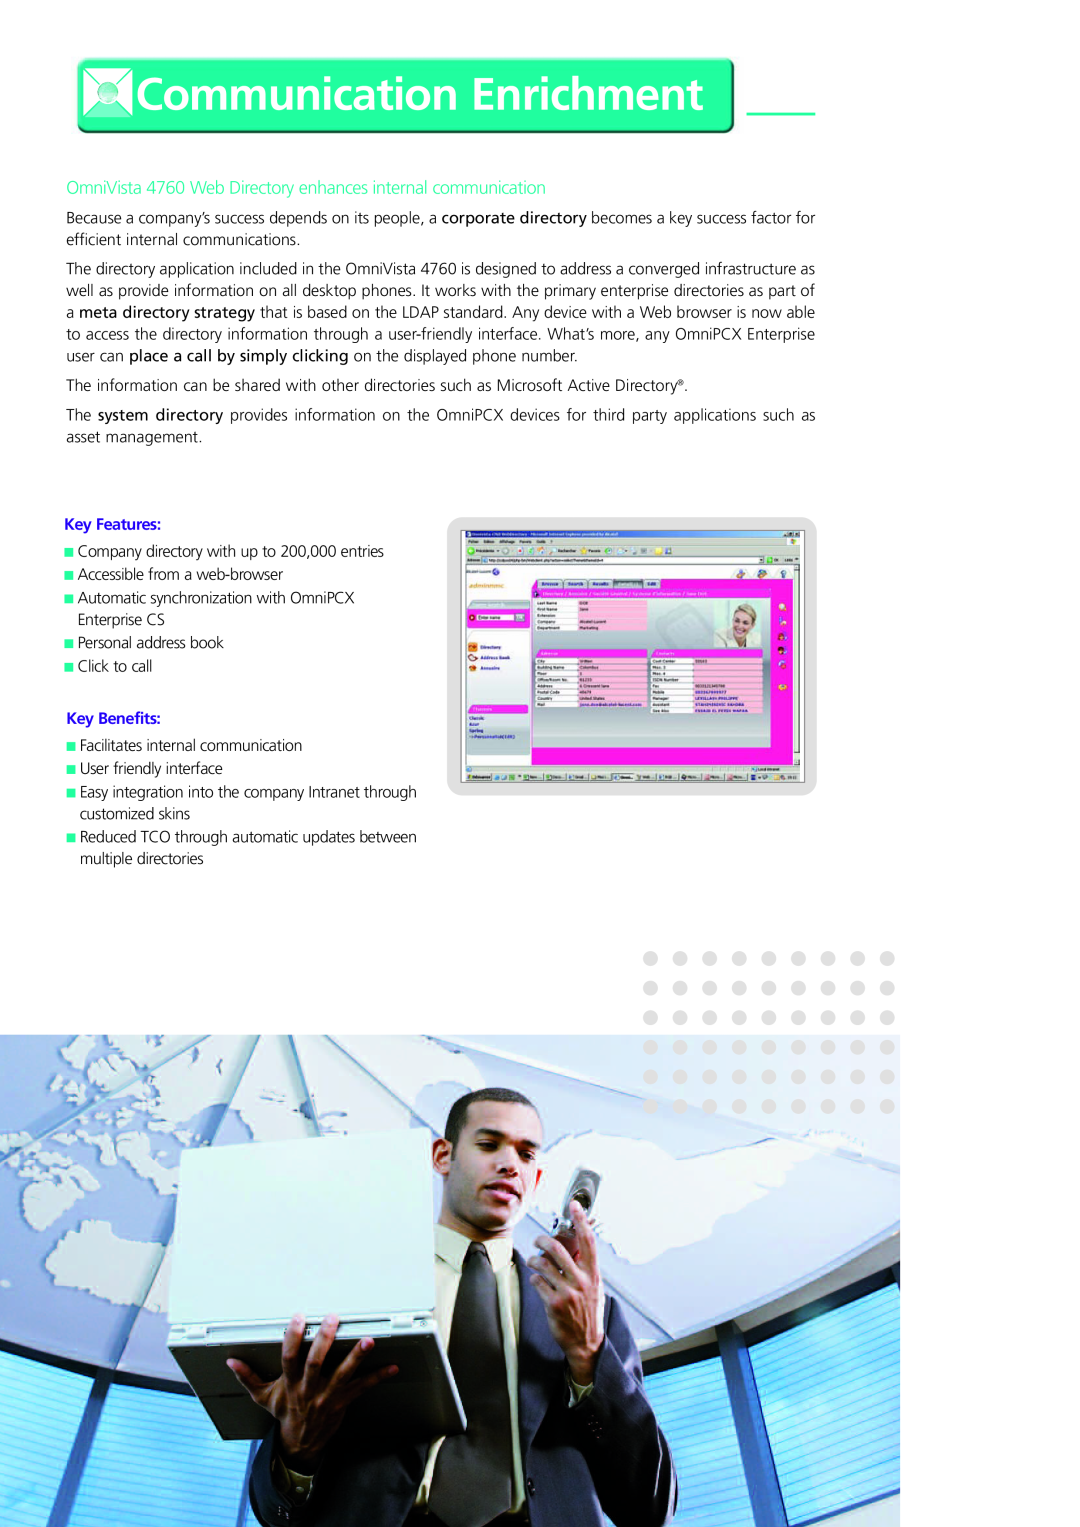 Alcatel-Lucent Communication Enrichment, OmniVista 4760 Web Directory enhances internal communication, Key Features 